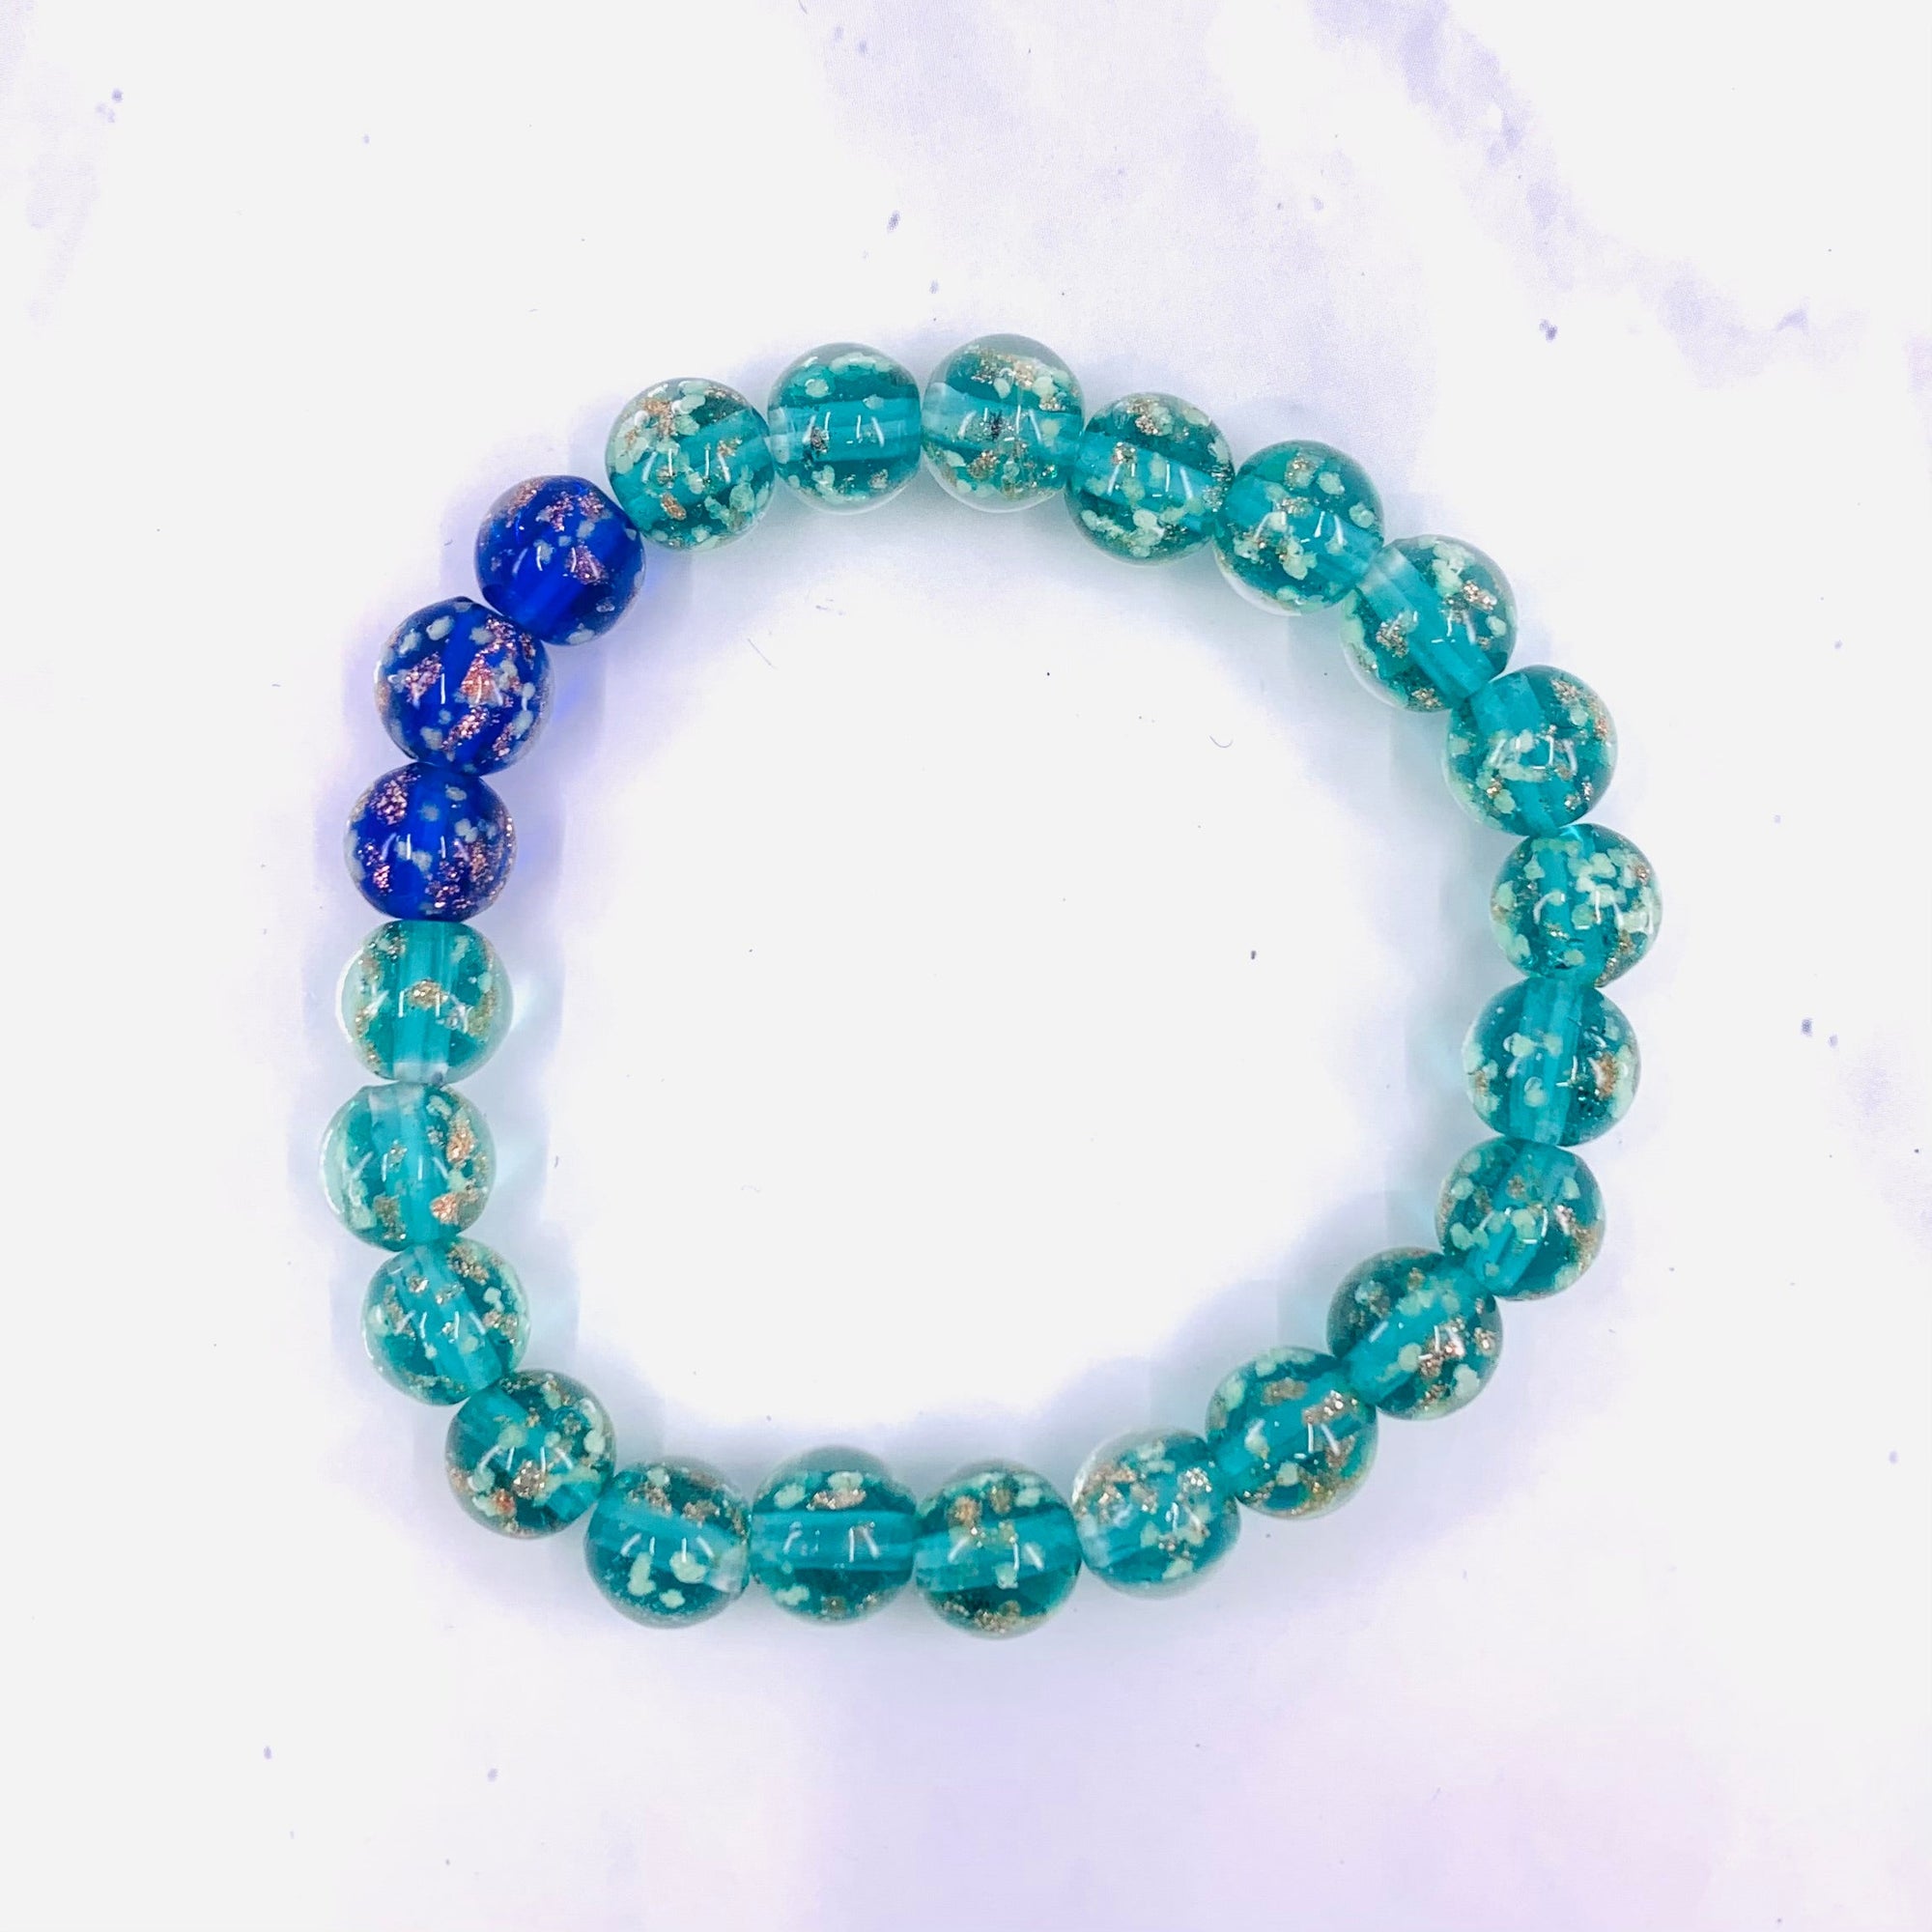 Mermaid Glow Glass Bracelet Jewelry - Teal & Blue 